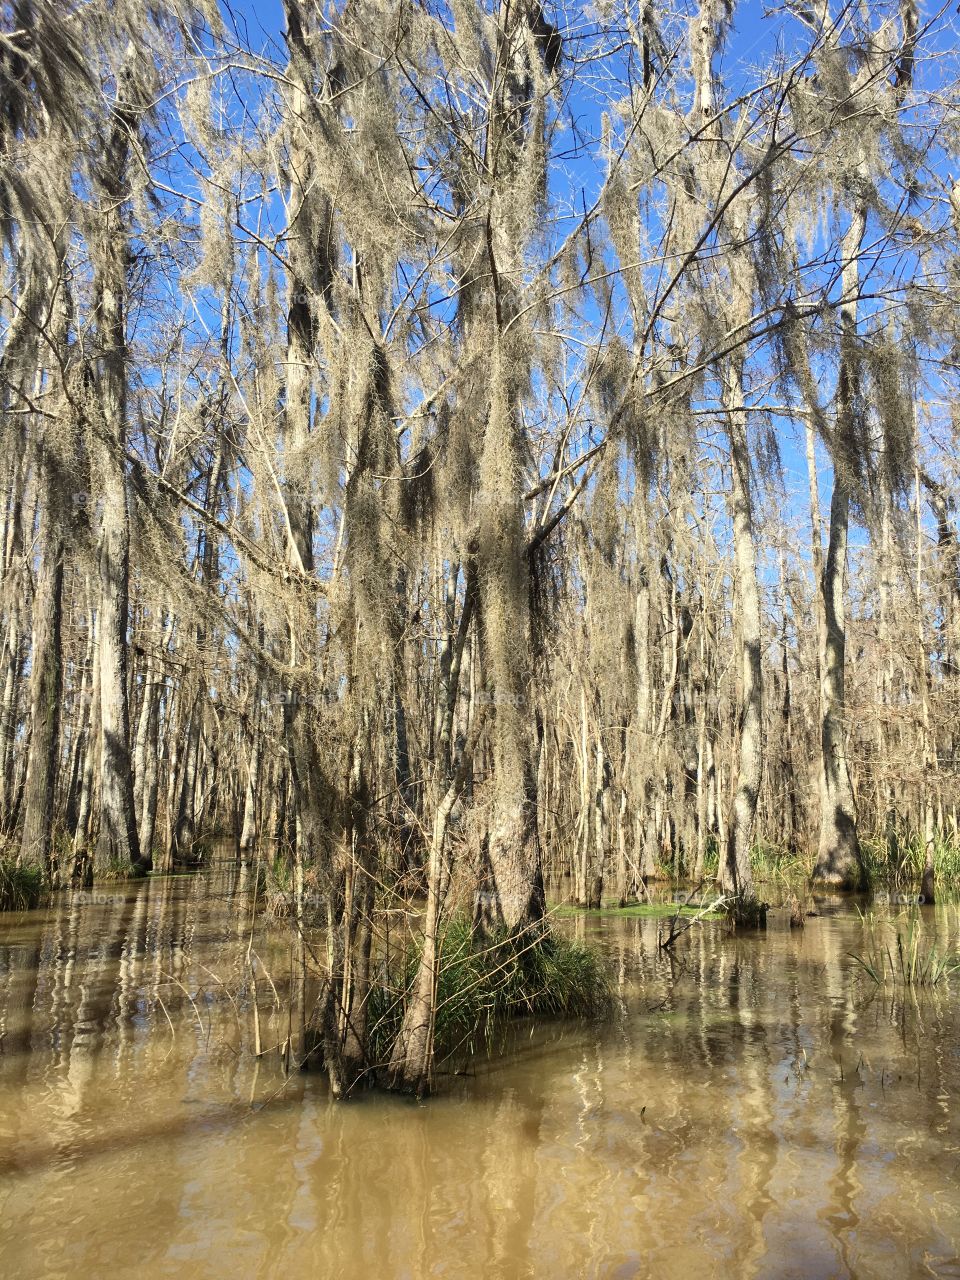 Louisiana's swamp